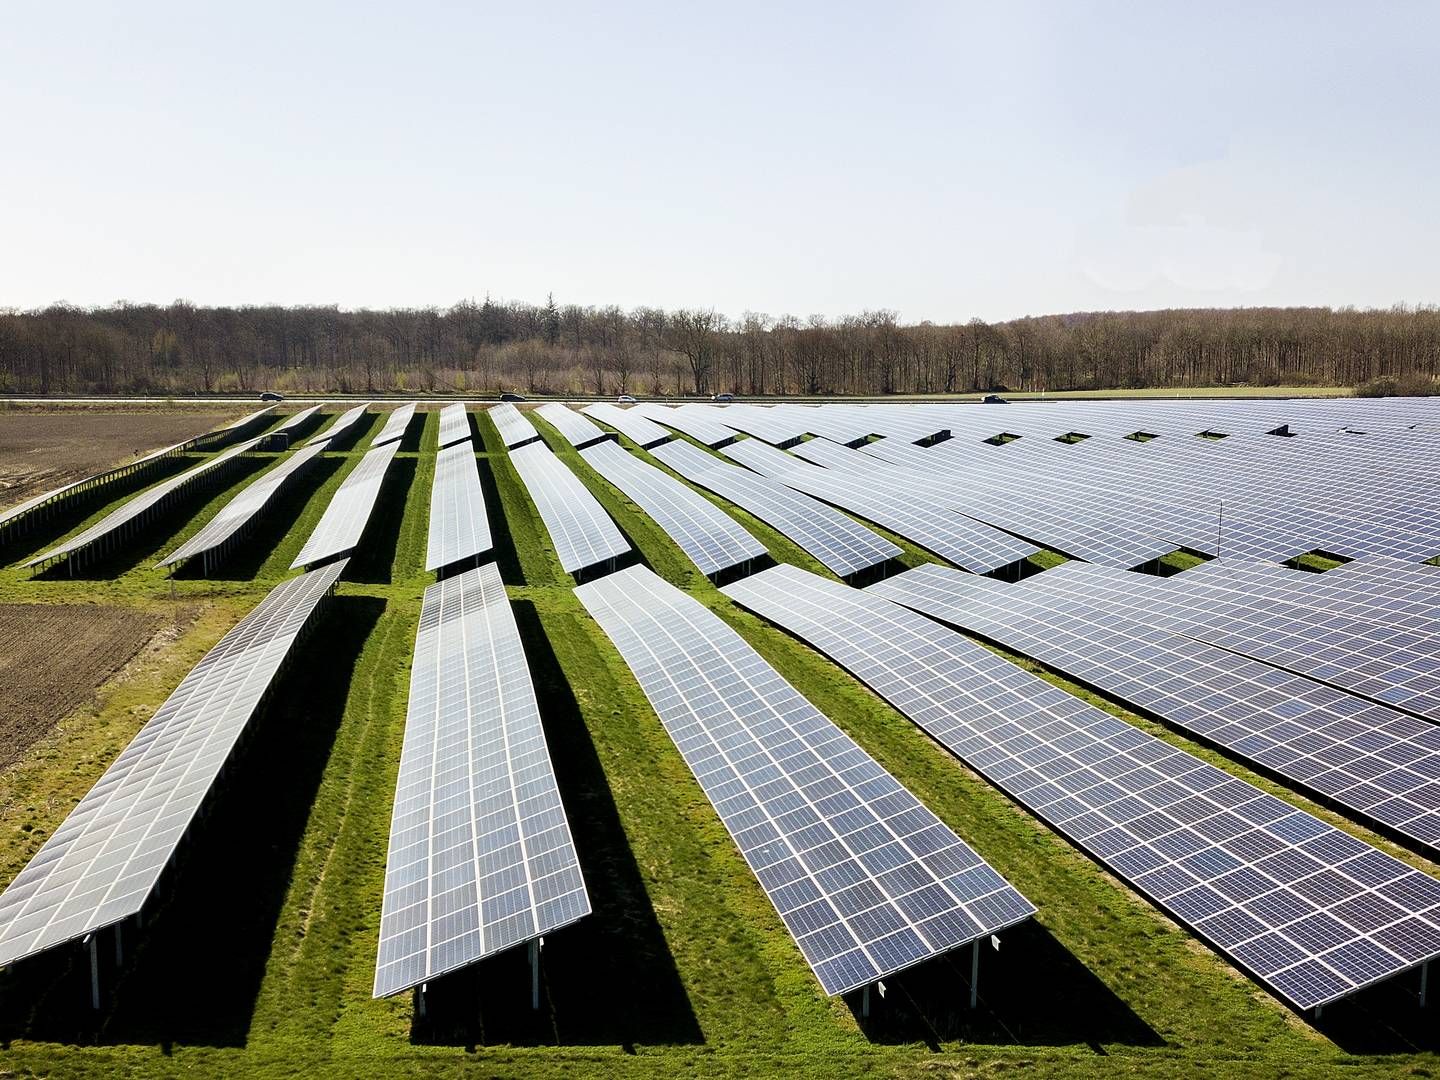 Regeringen har glemt borgerne i nyt energiforslag, der bl.a. vil gøre det nemmere at opstille solcelleparker, mener KL. | Foto: Finn Frandsen